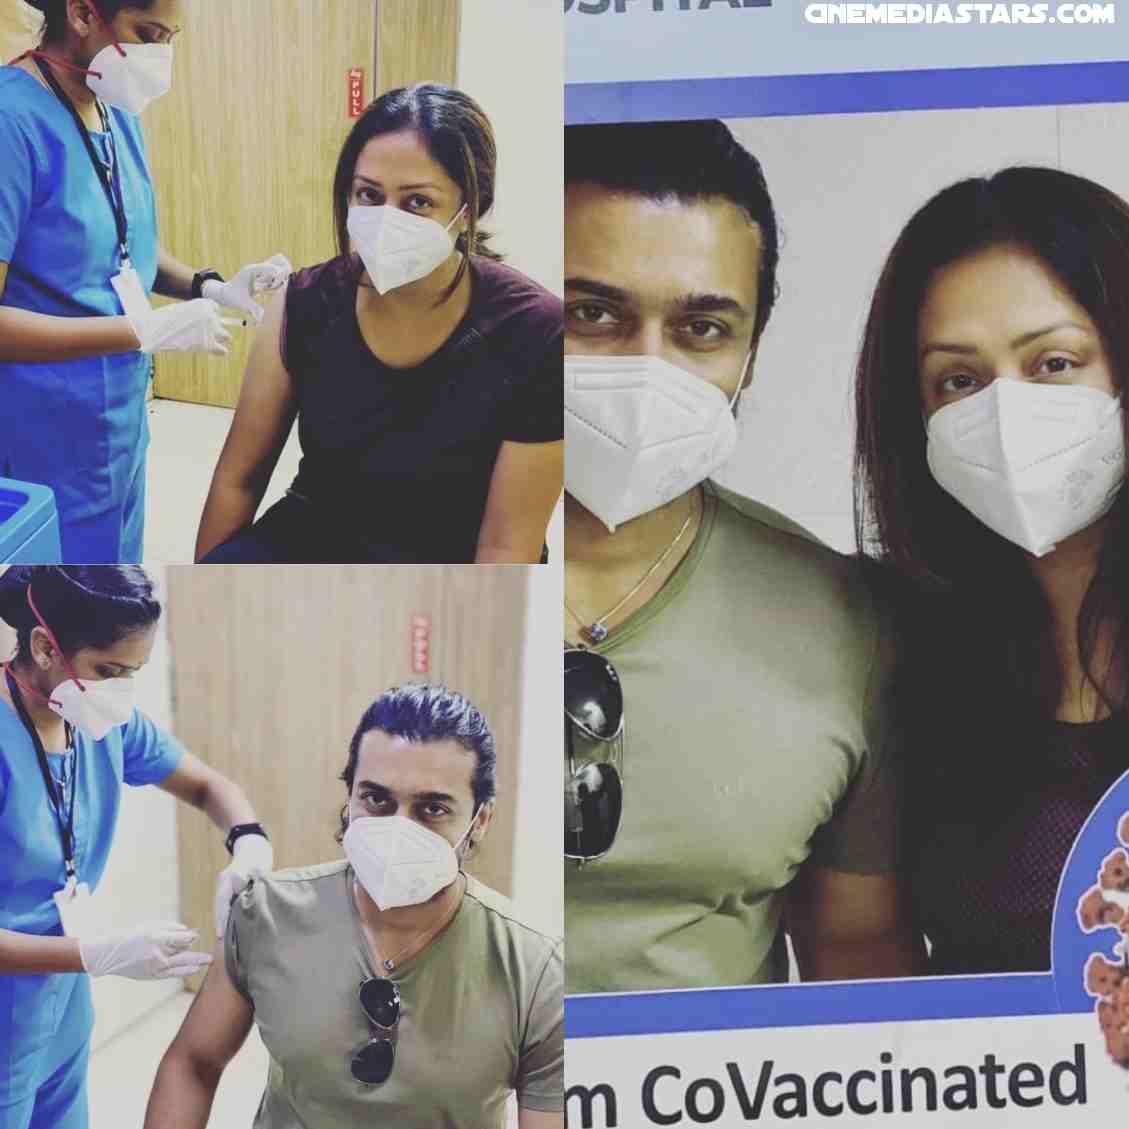 Kollywood famous real pairs Suriya Jyothika got vaccinated